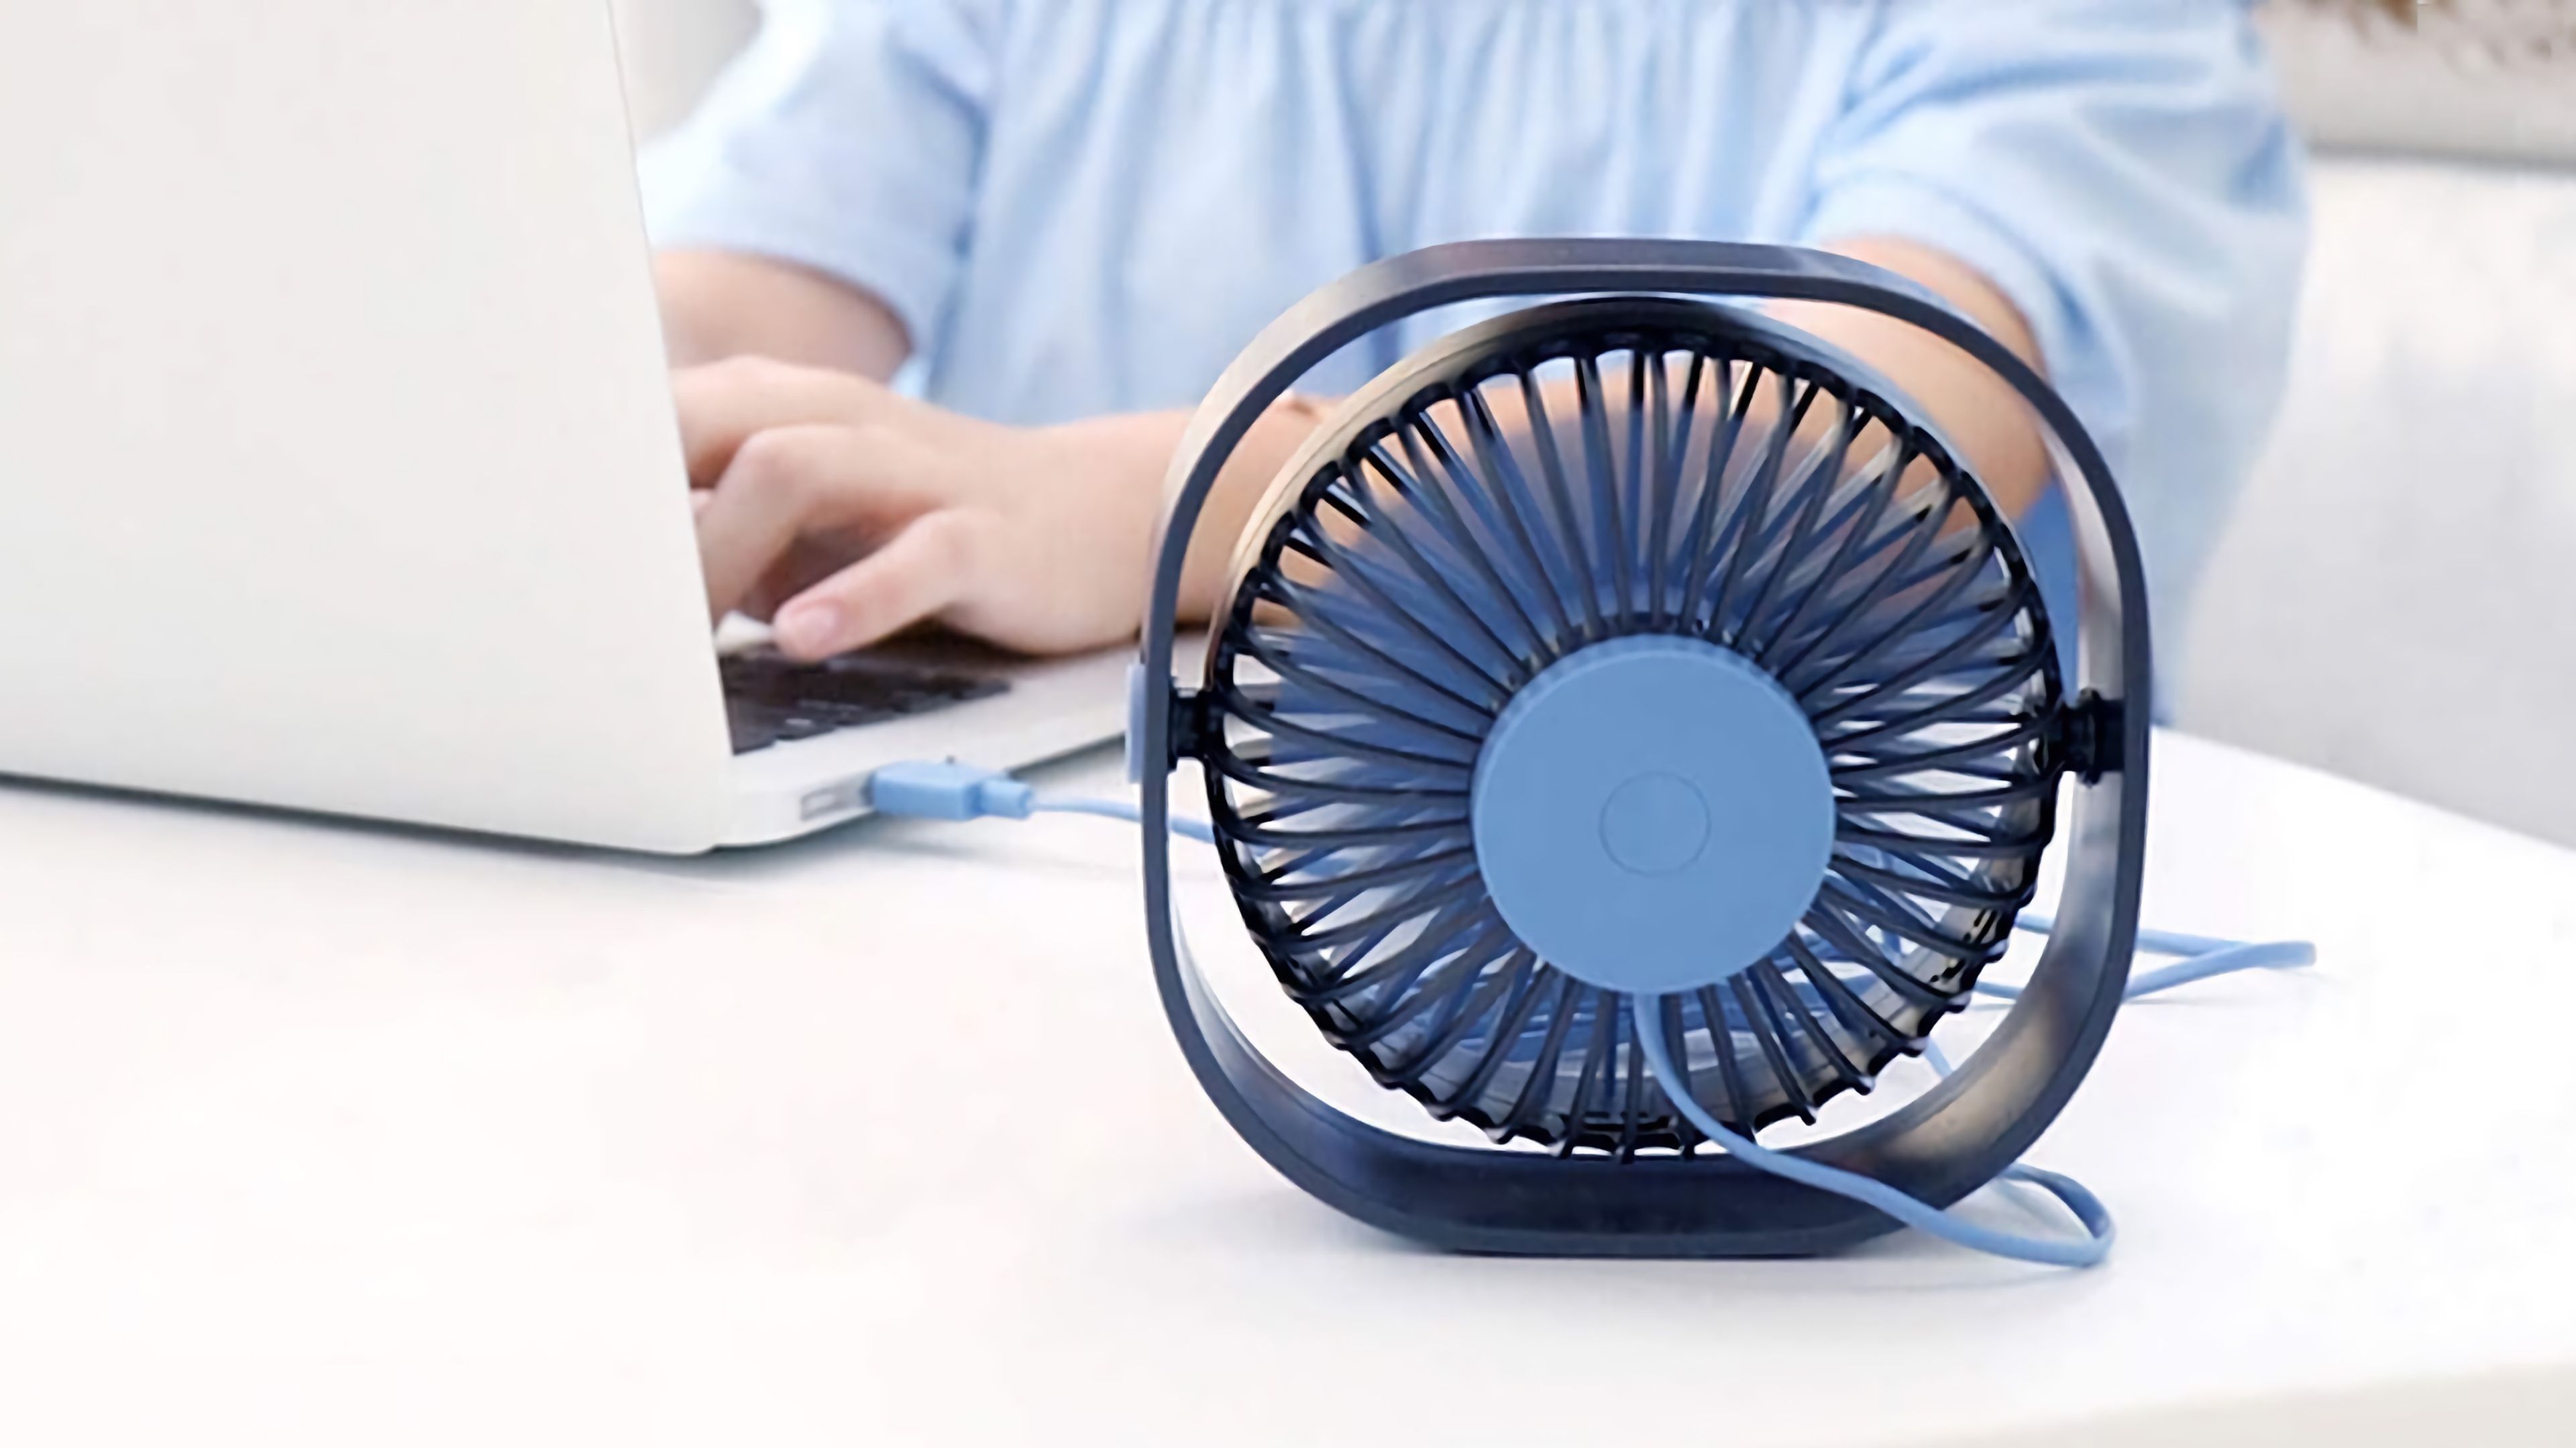 Mini Ventilador ultra silencioso para poner con el ordenador en verano